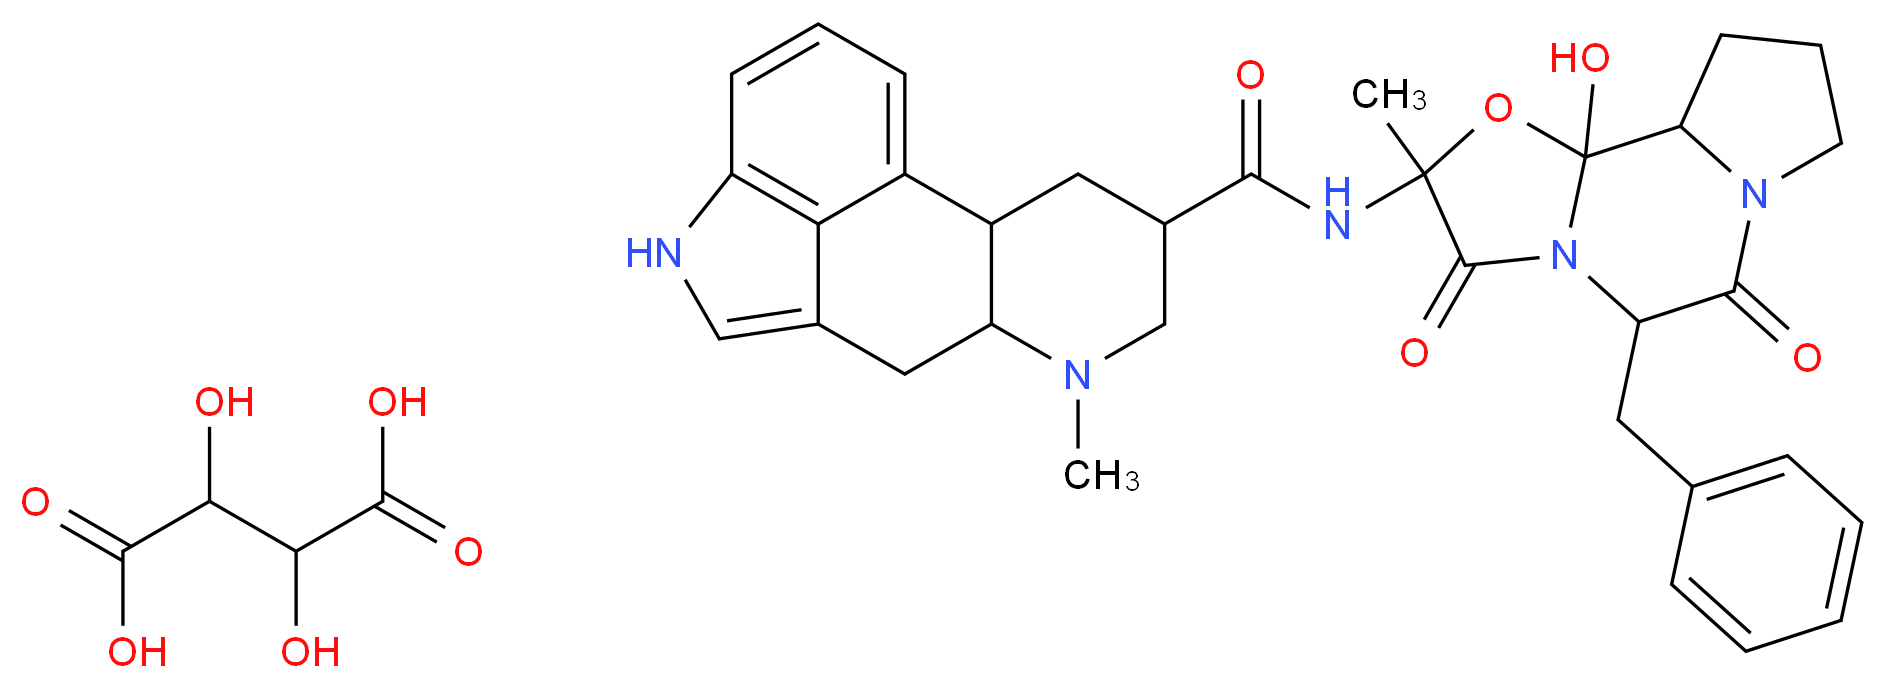 5989-77-5 molecular structure